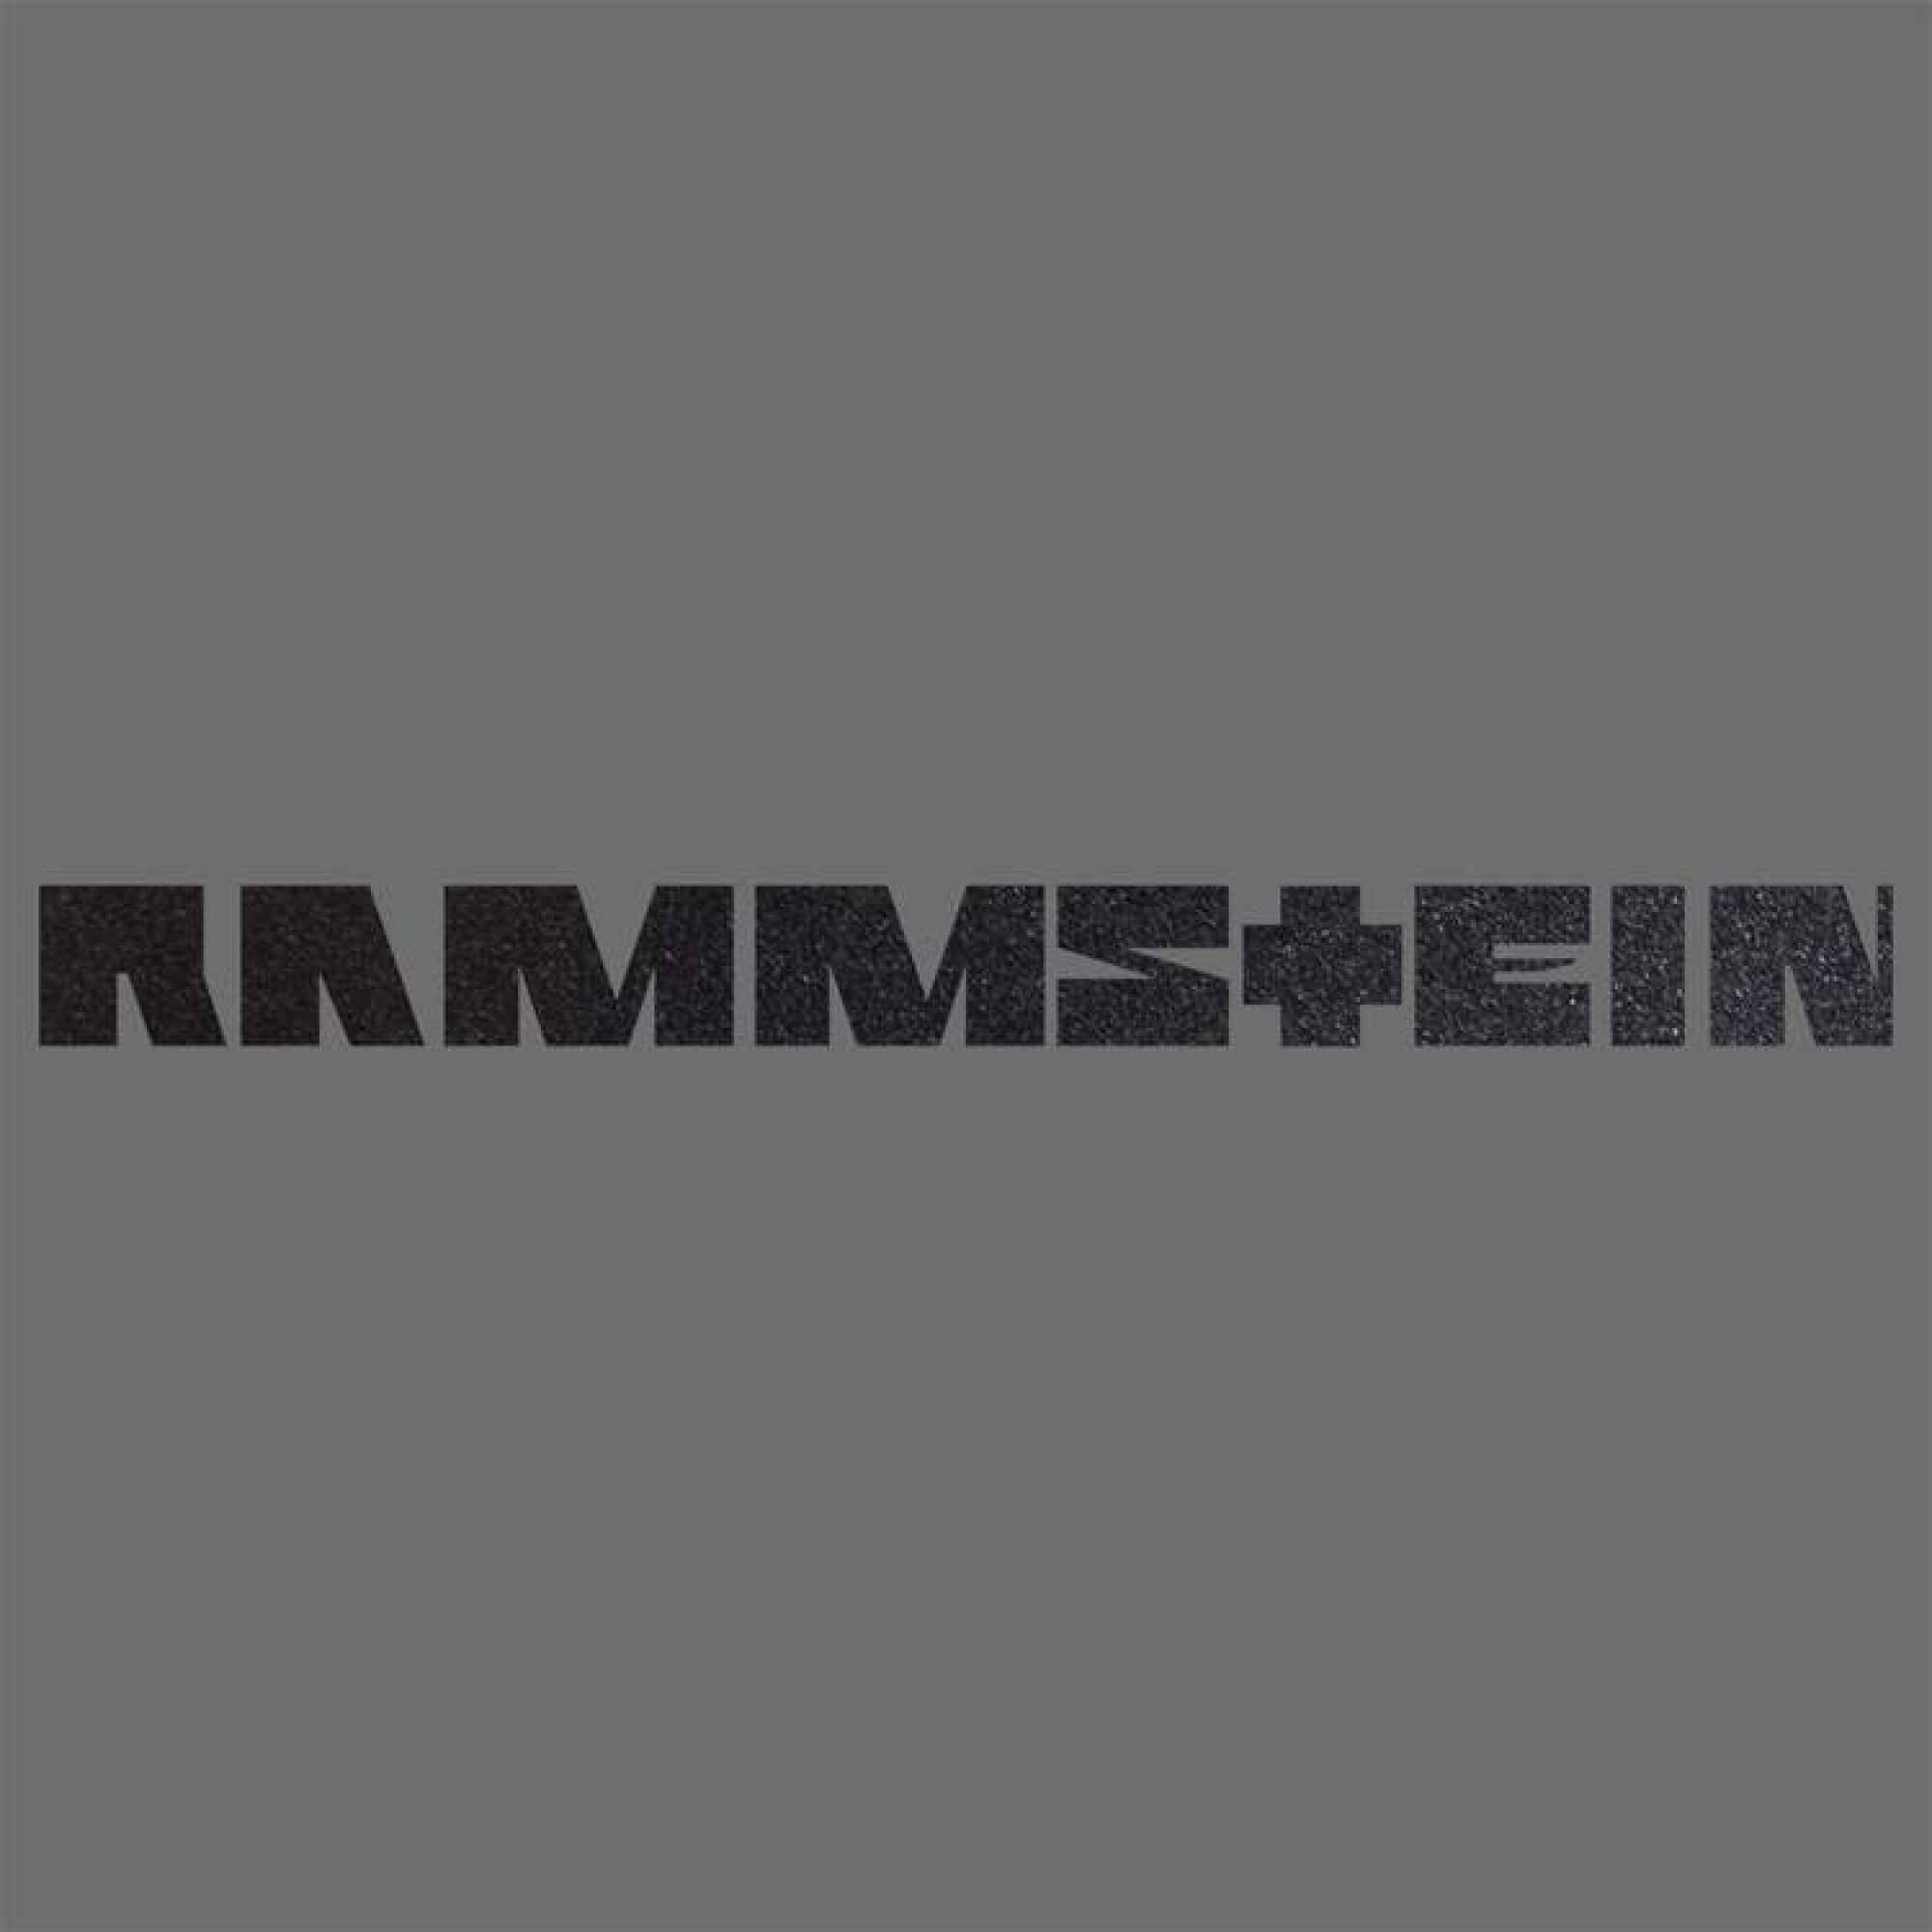 Autoaufkleber ”Rammstein”